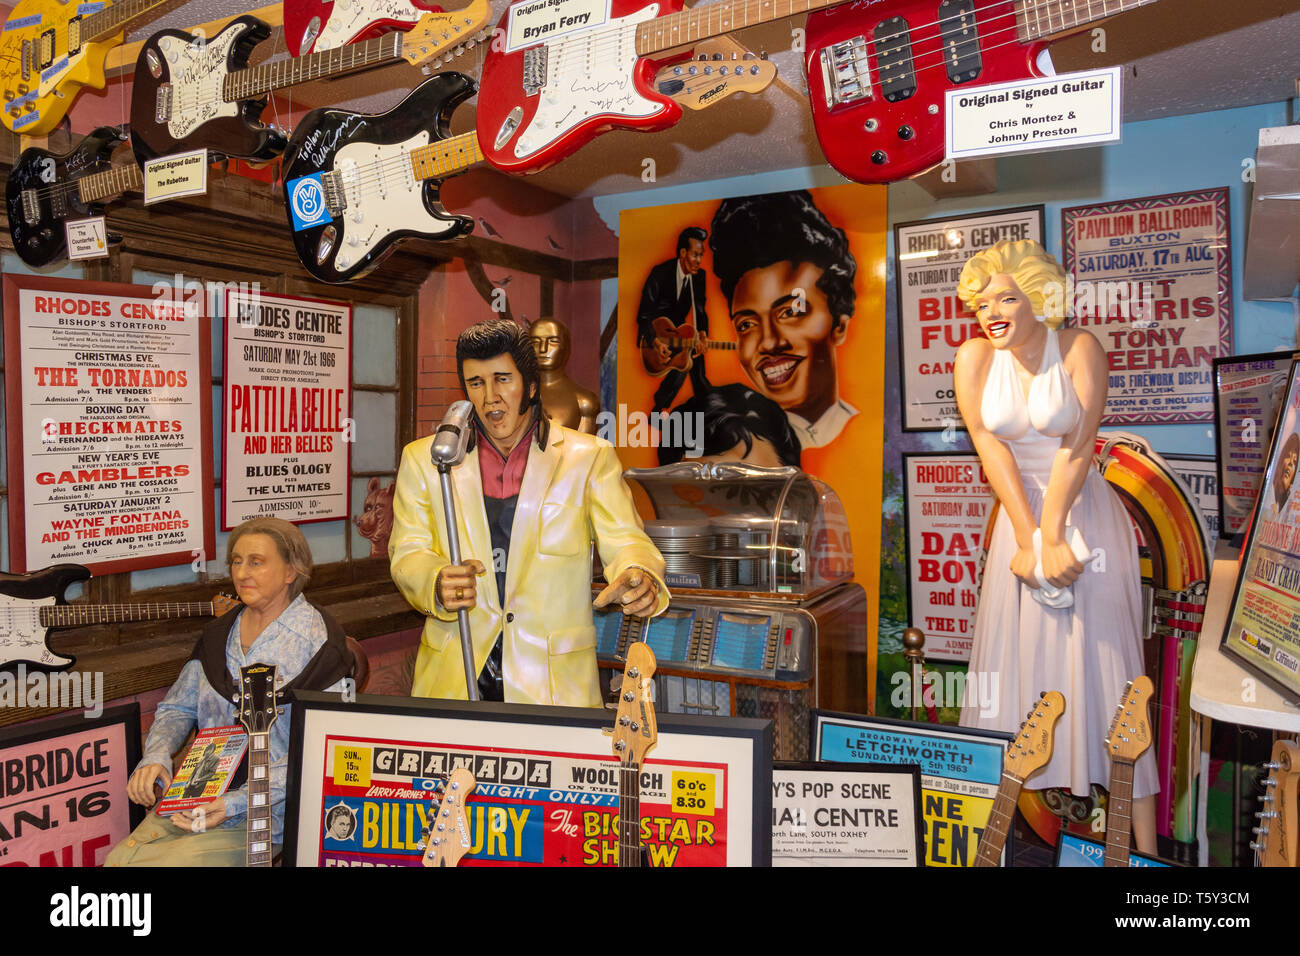 60's Rock & Roll s'affichent dans le musée du jouet, le château de Mountfitchet, Colchester, Essex, Angleterre, Royaume-Uni Banque D'Images